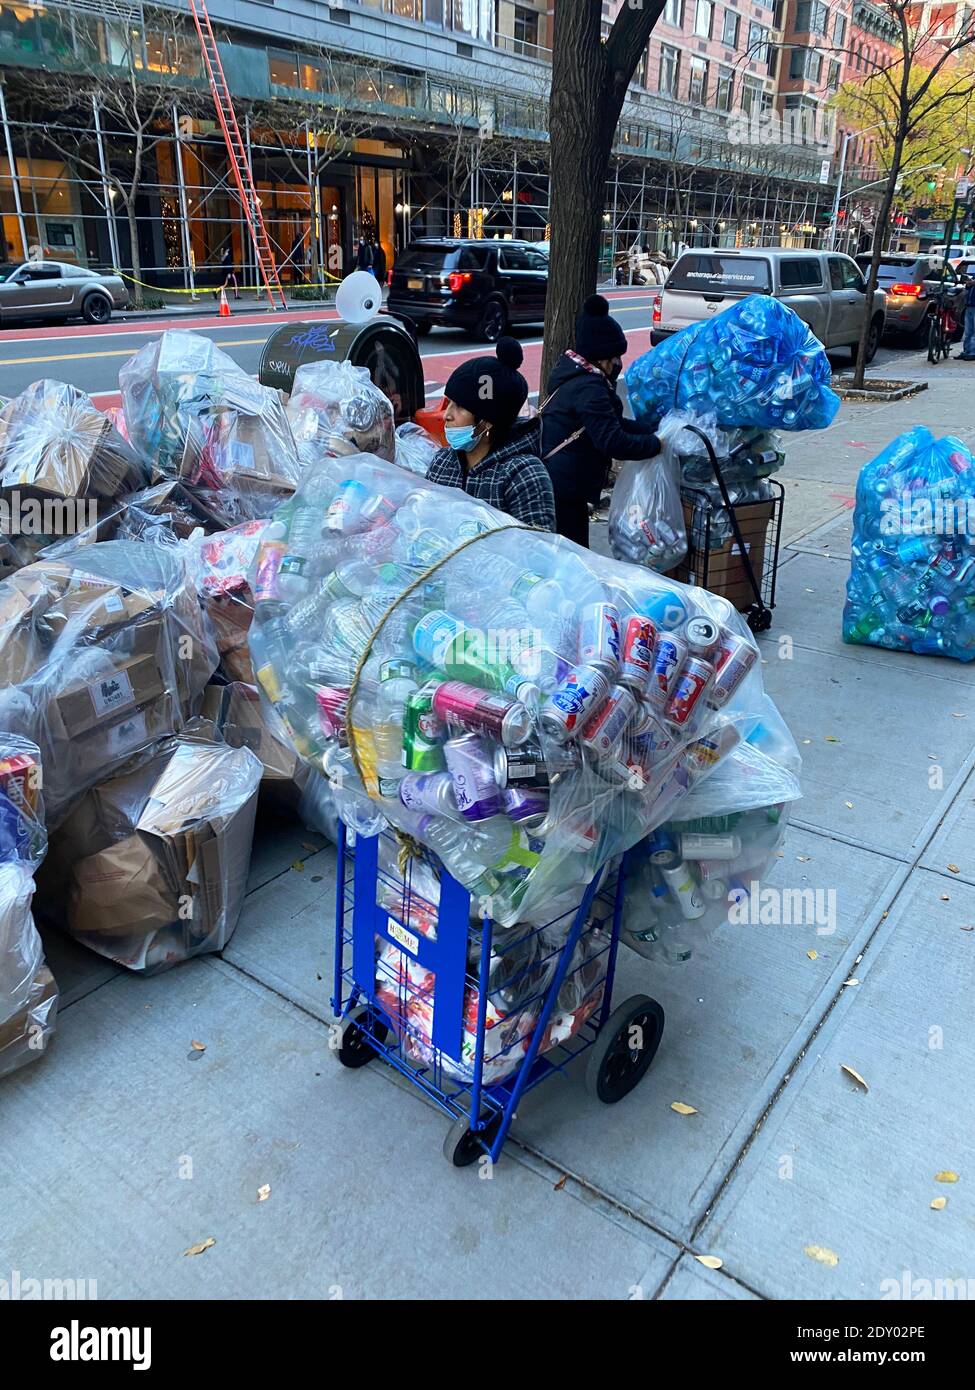 Les femmes travaillent dur à recueillir des bouteilles et des canettes pour les transformer en espèces dans la rue de Manhattan, New York. Banque D'Images